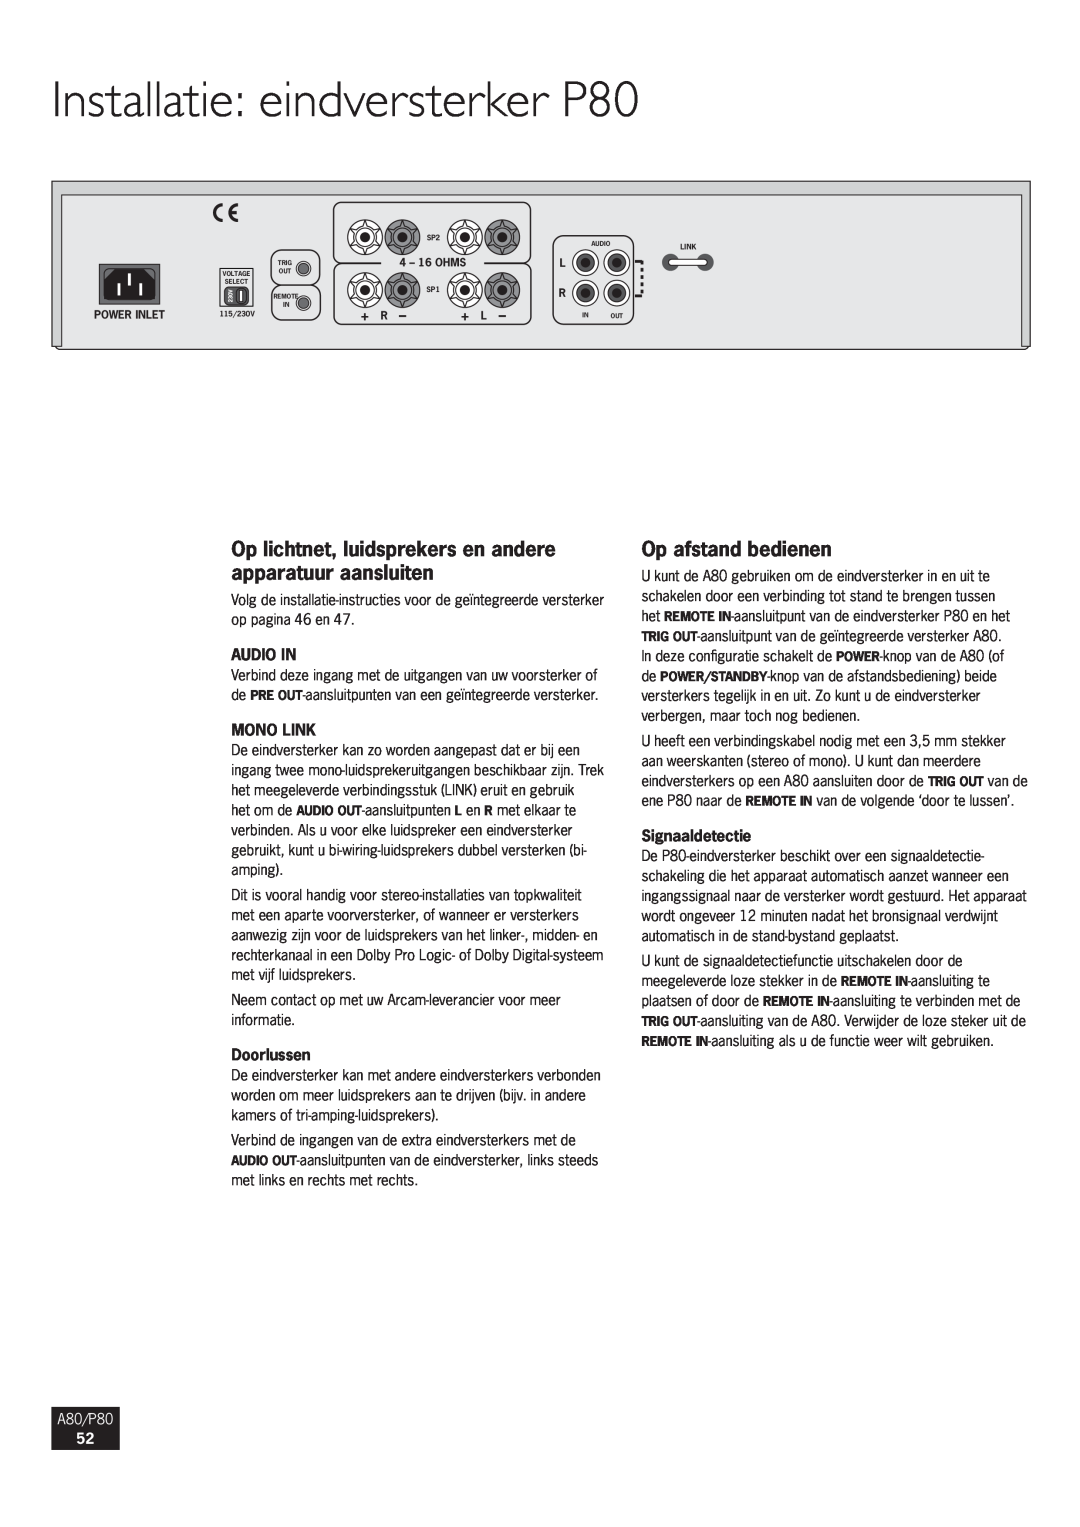 Arcam A80 Installatie eindversterker P80, Op afstand bedienen, Doorlussen, Signaaldetectie, + R, + L, Audio In, Mono Link 